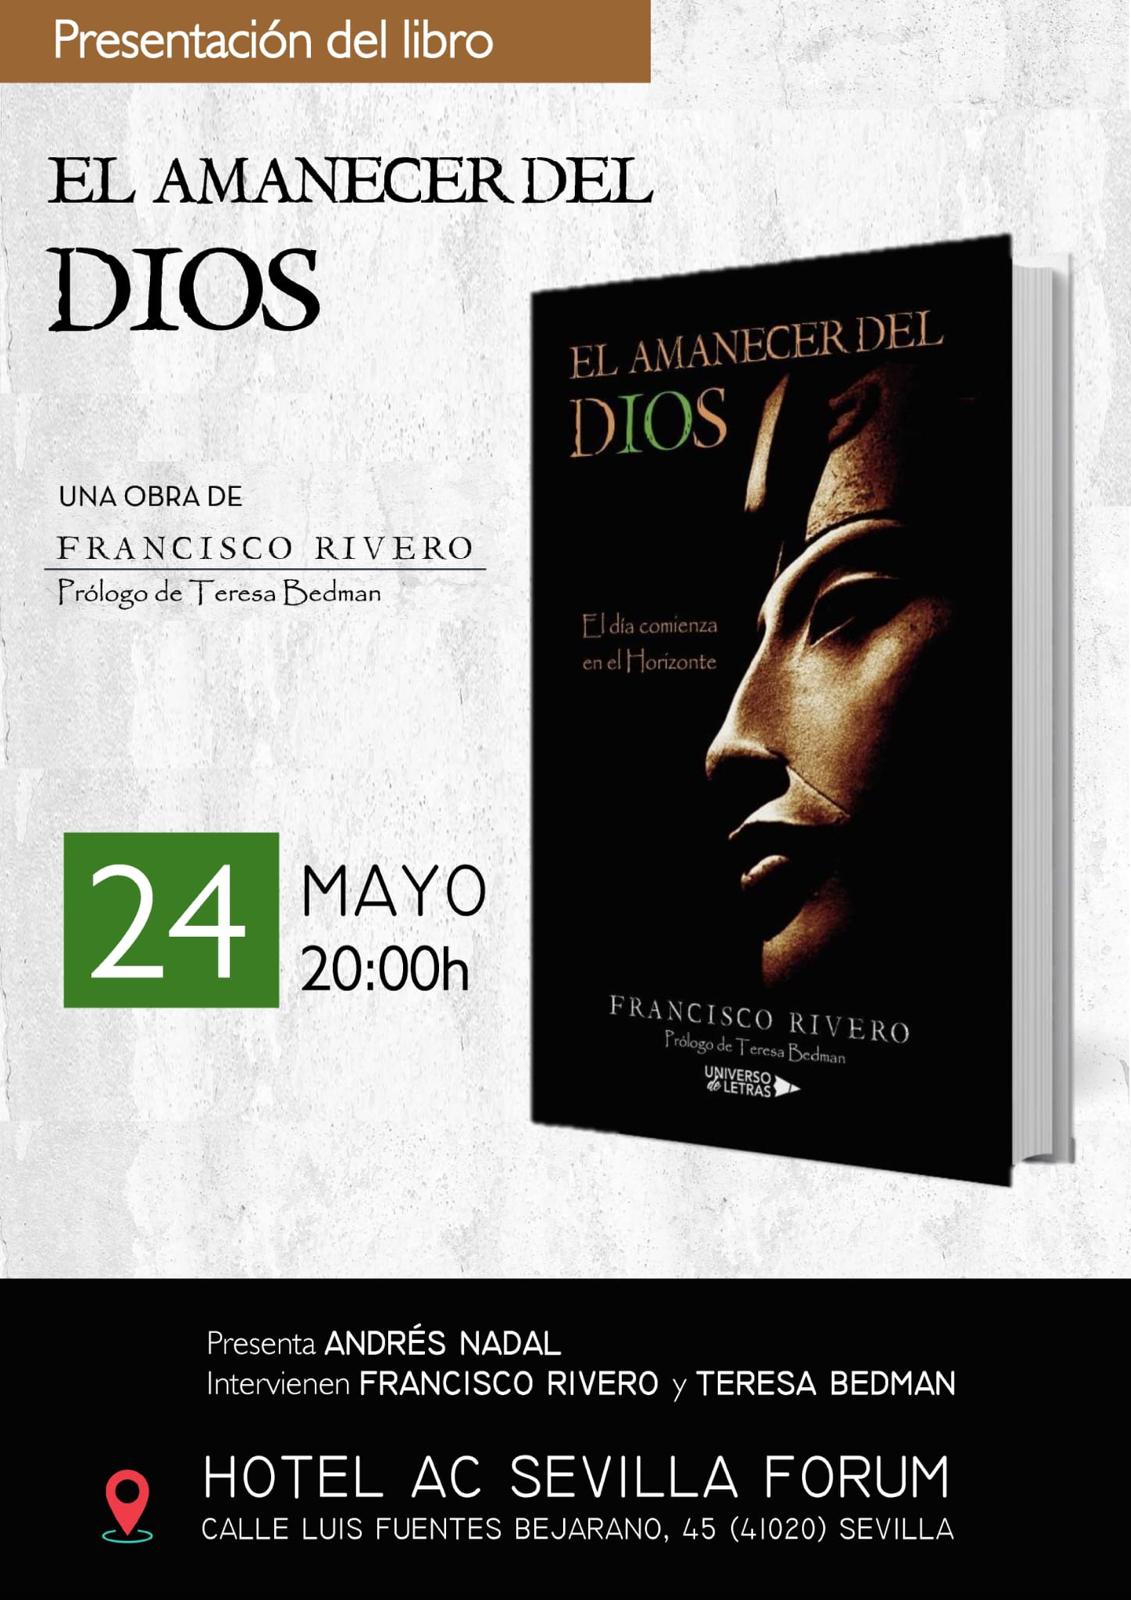 «EL AMANECER DEL DIOS: El día comienza en el Horizonte» – Presentación del Libro de Francisco Rivero